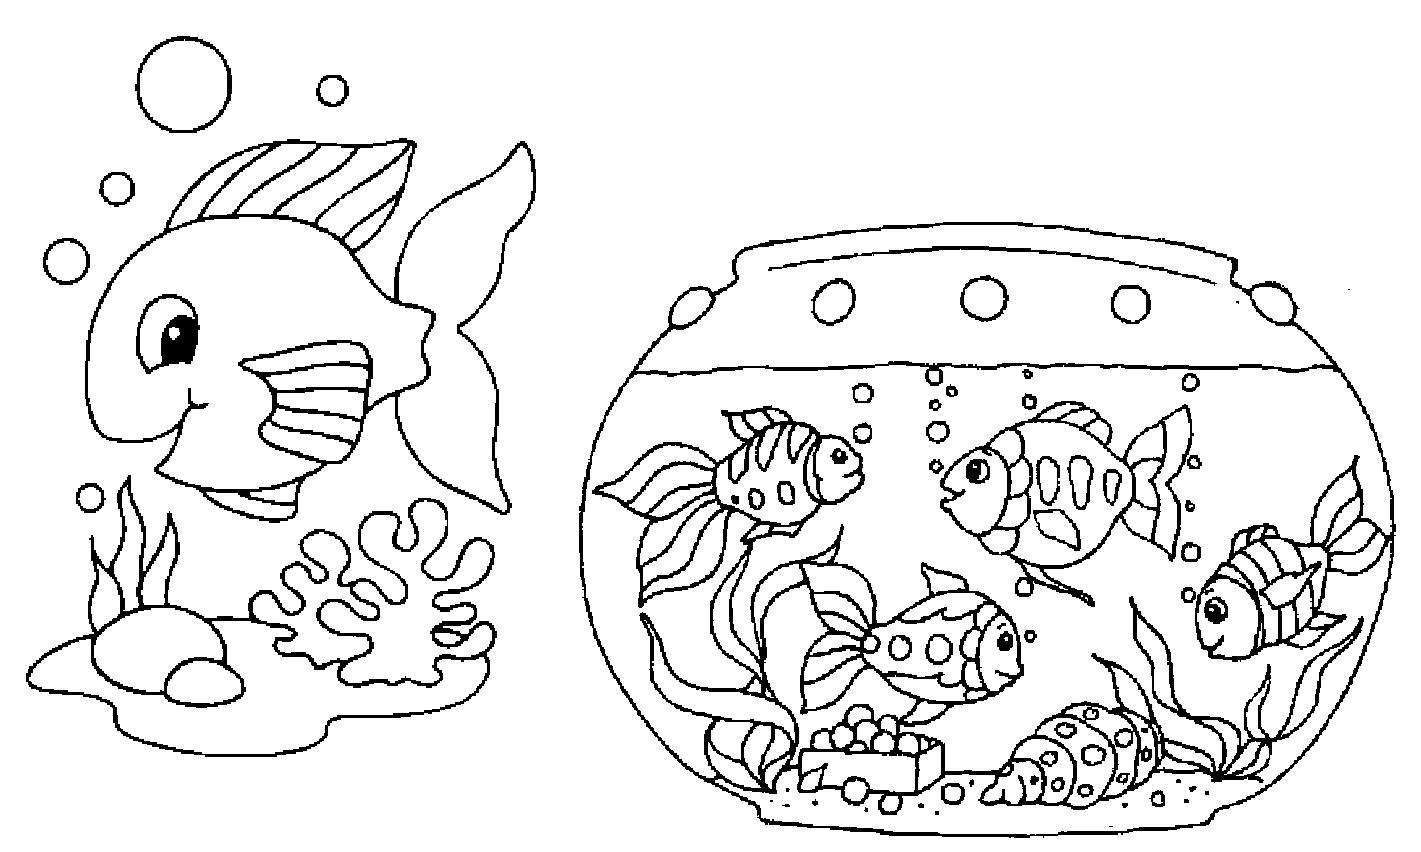 Раскраска рыбки для детей 5 6 лет. Раскраска аквариум с рыбками. Аквариумные рыбки раскраска. Аквариум раскраска для детей. Рыбы в аквариуме раскраска для детей.